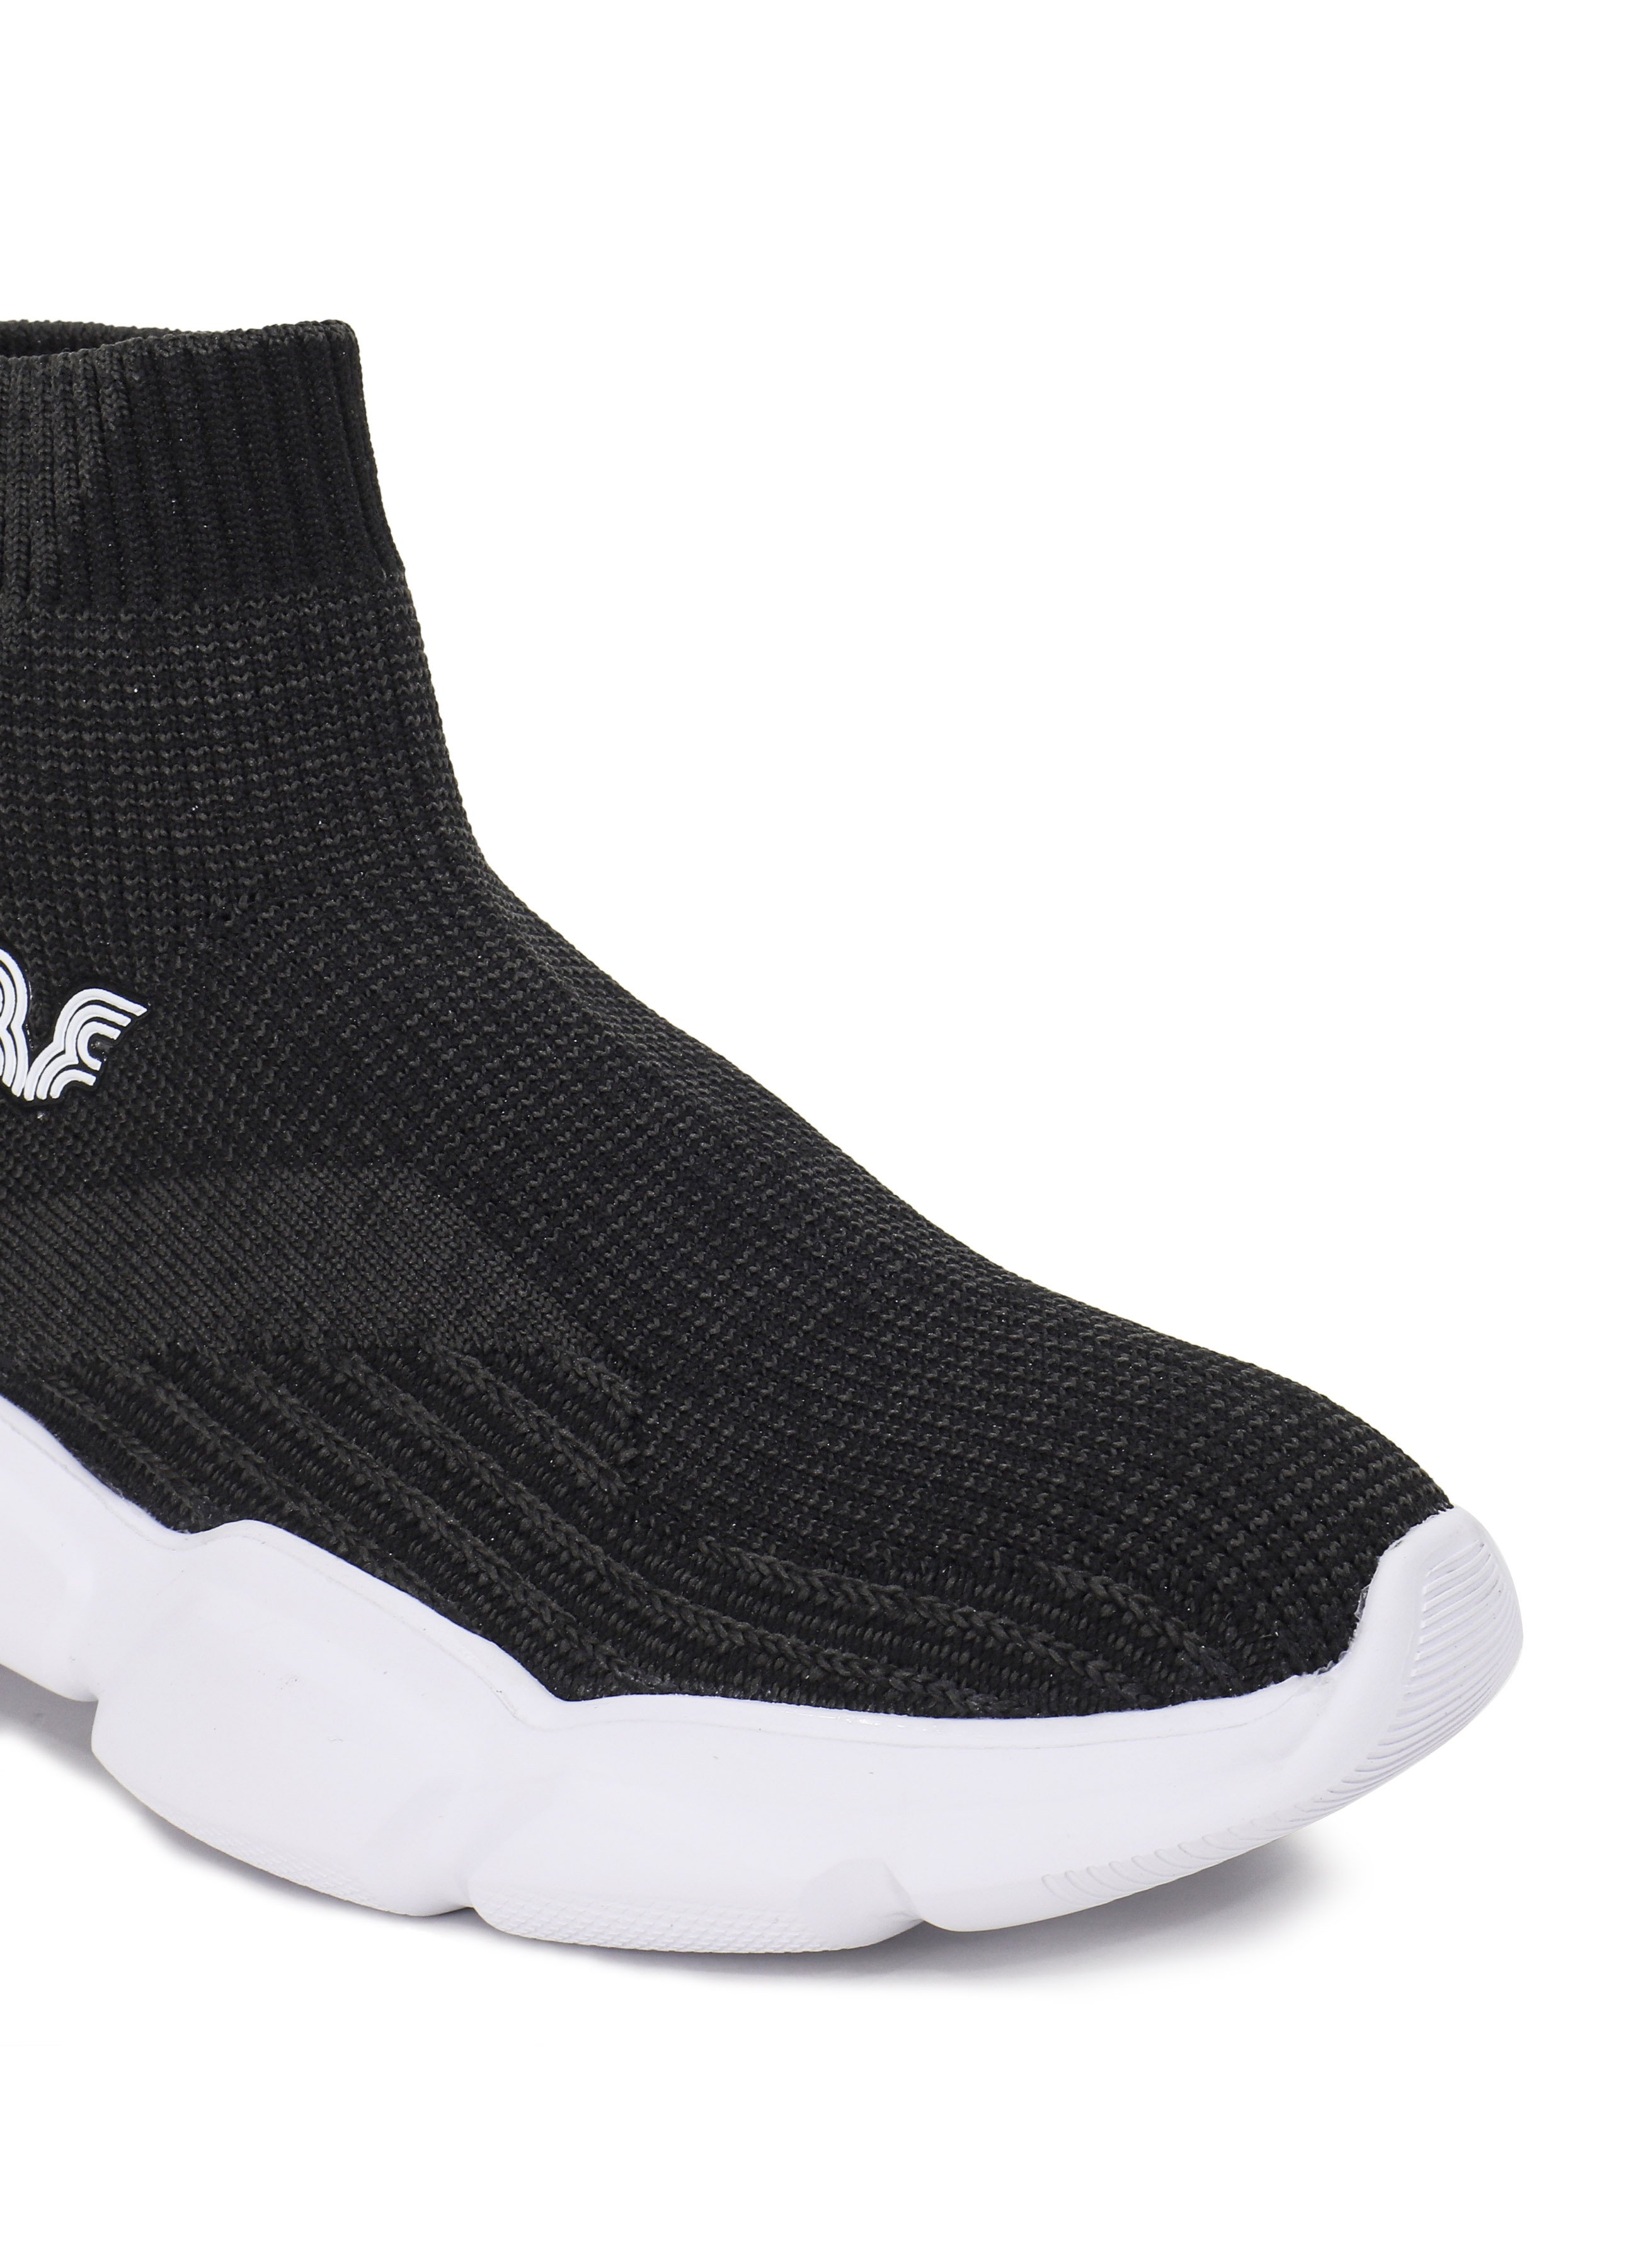 Kadın Siyah Bilekli Çorap Model Spor Ayakkabı 8865